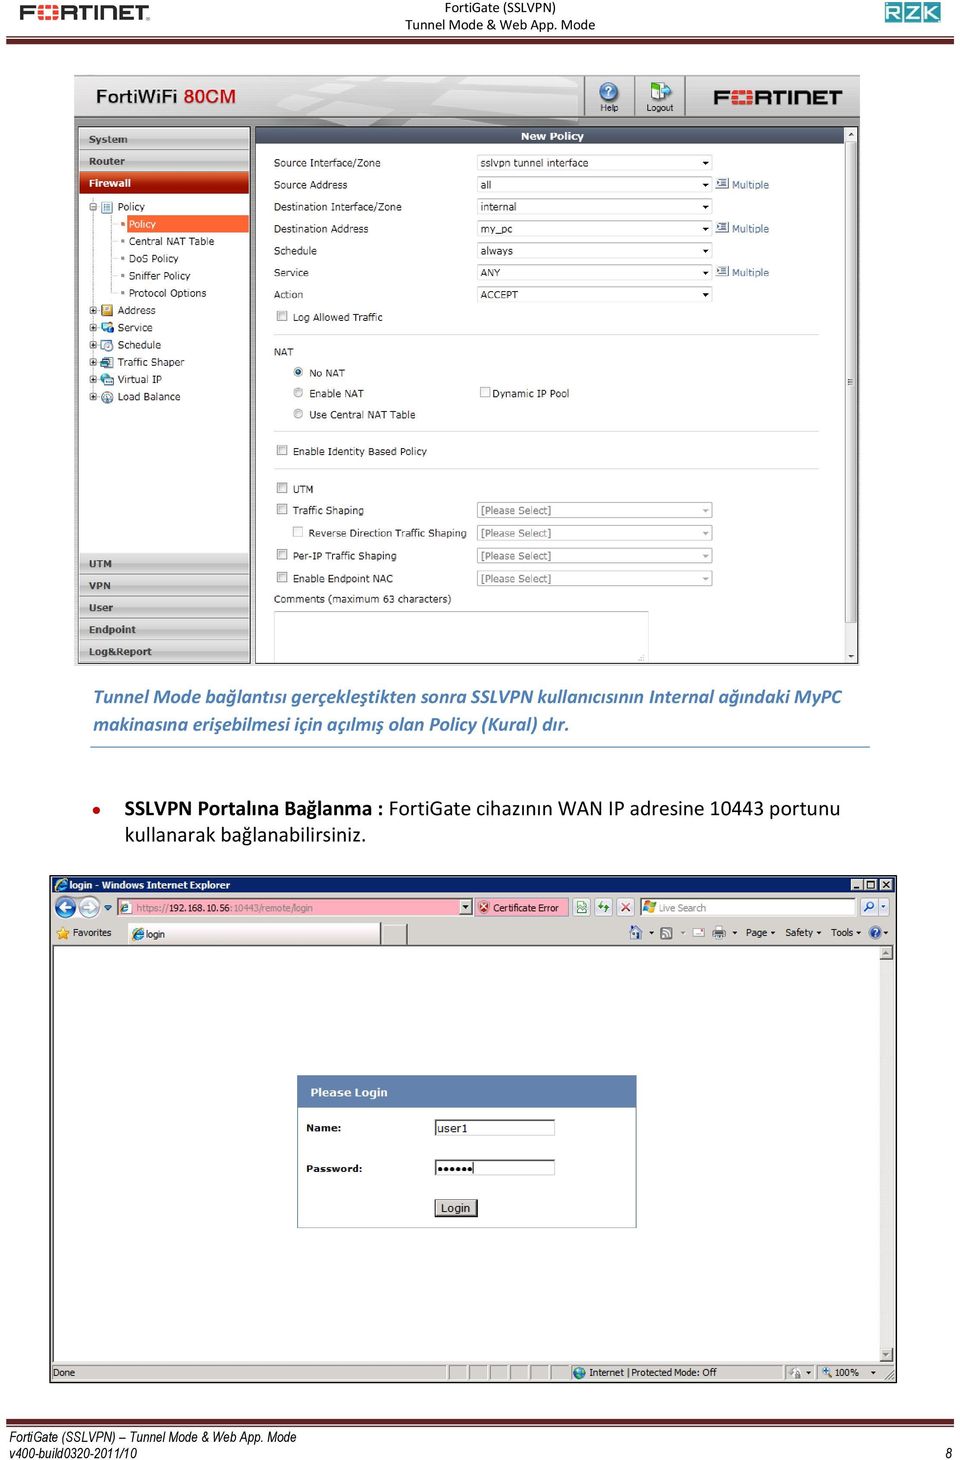 SSLVPN Portalına Bağlanma : FortiGate cihazının WAN IP adresine 10443